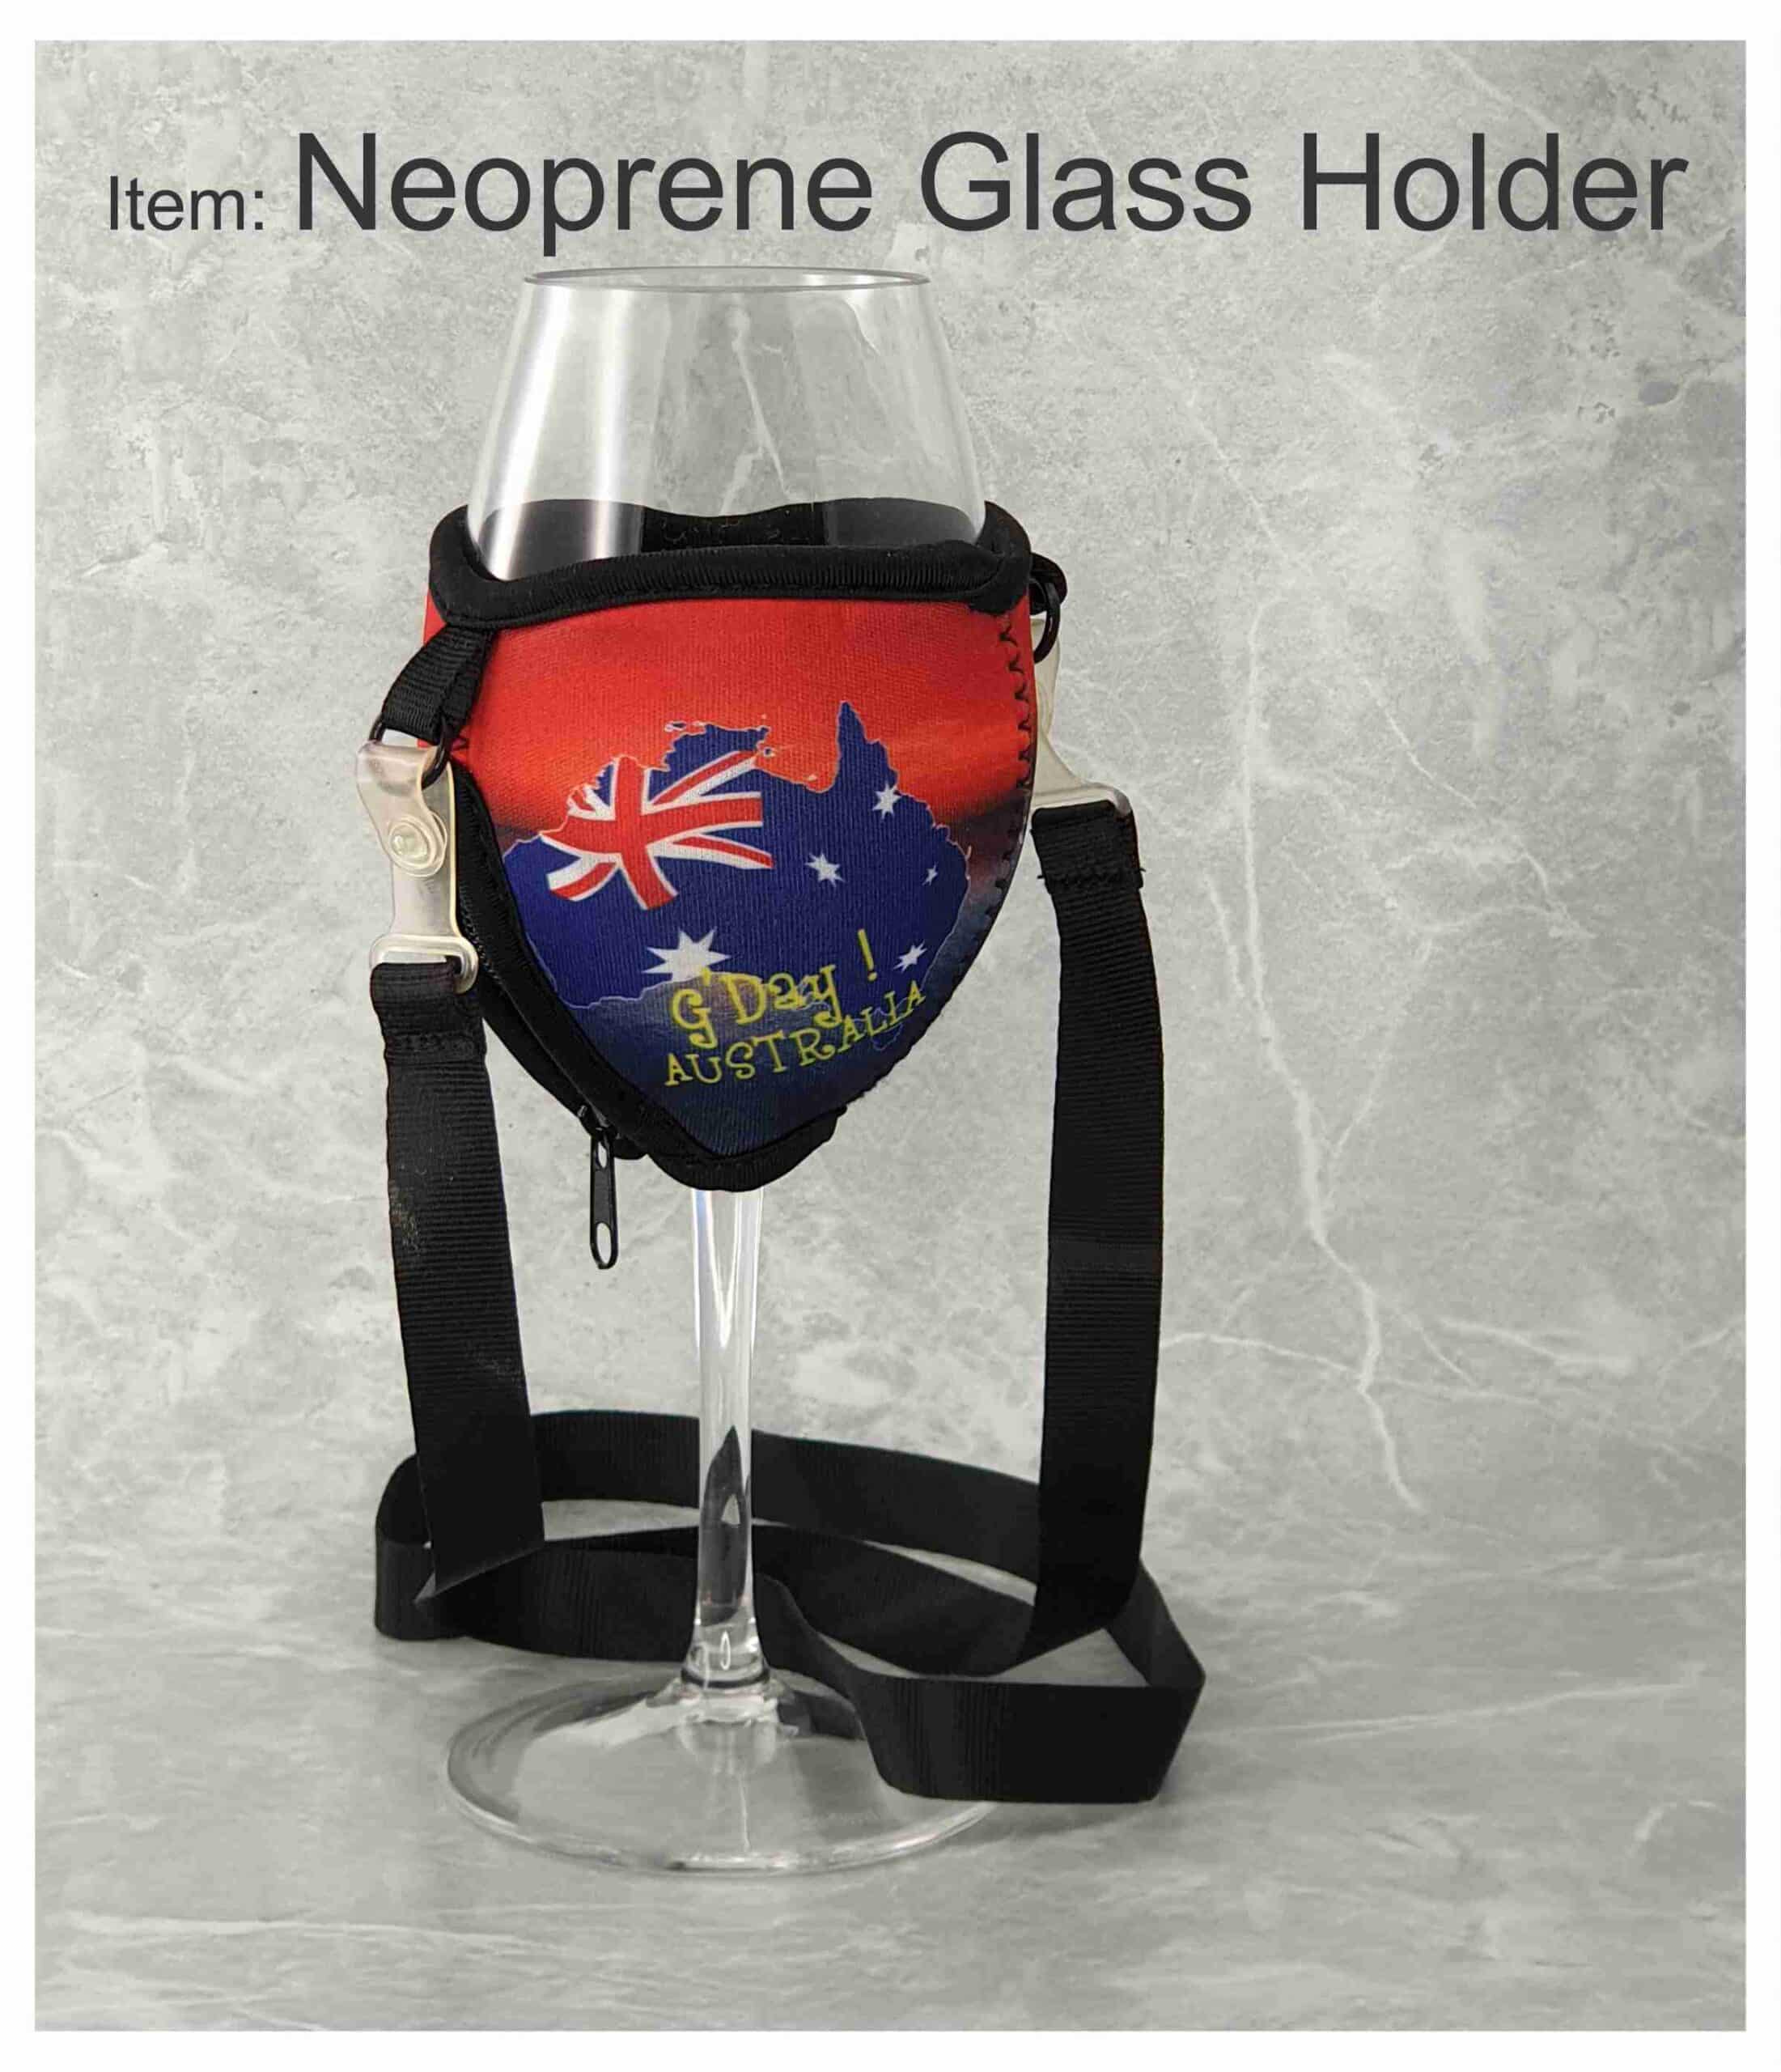 Neoprene Glass Holder scaled